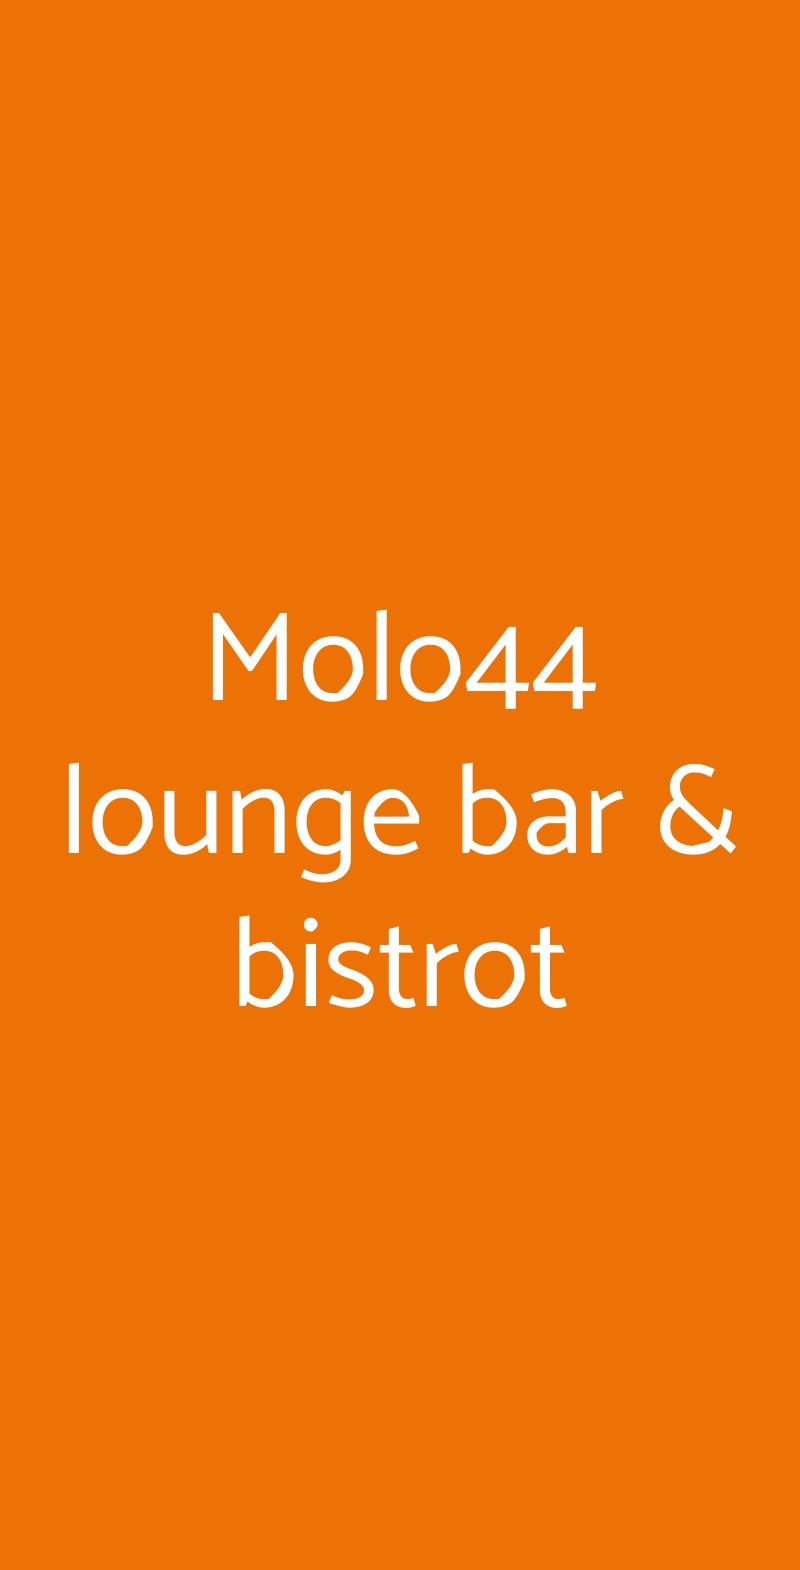 Molo44 lounge bar & bistrot Riva Del Garda menù 1 pagina